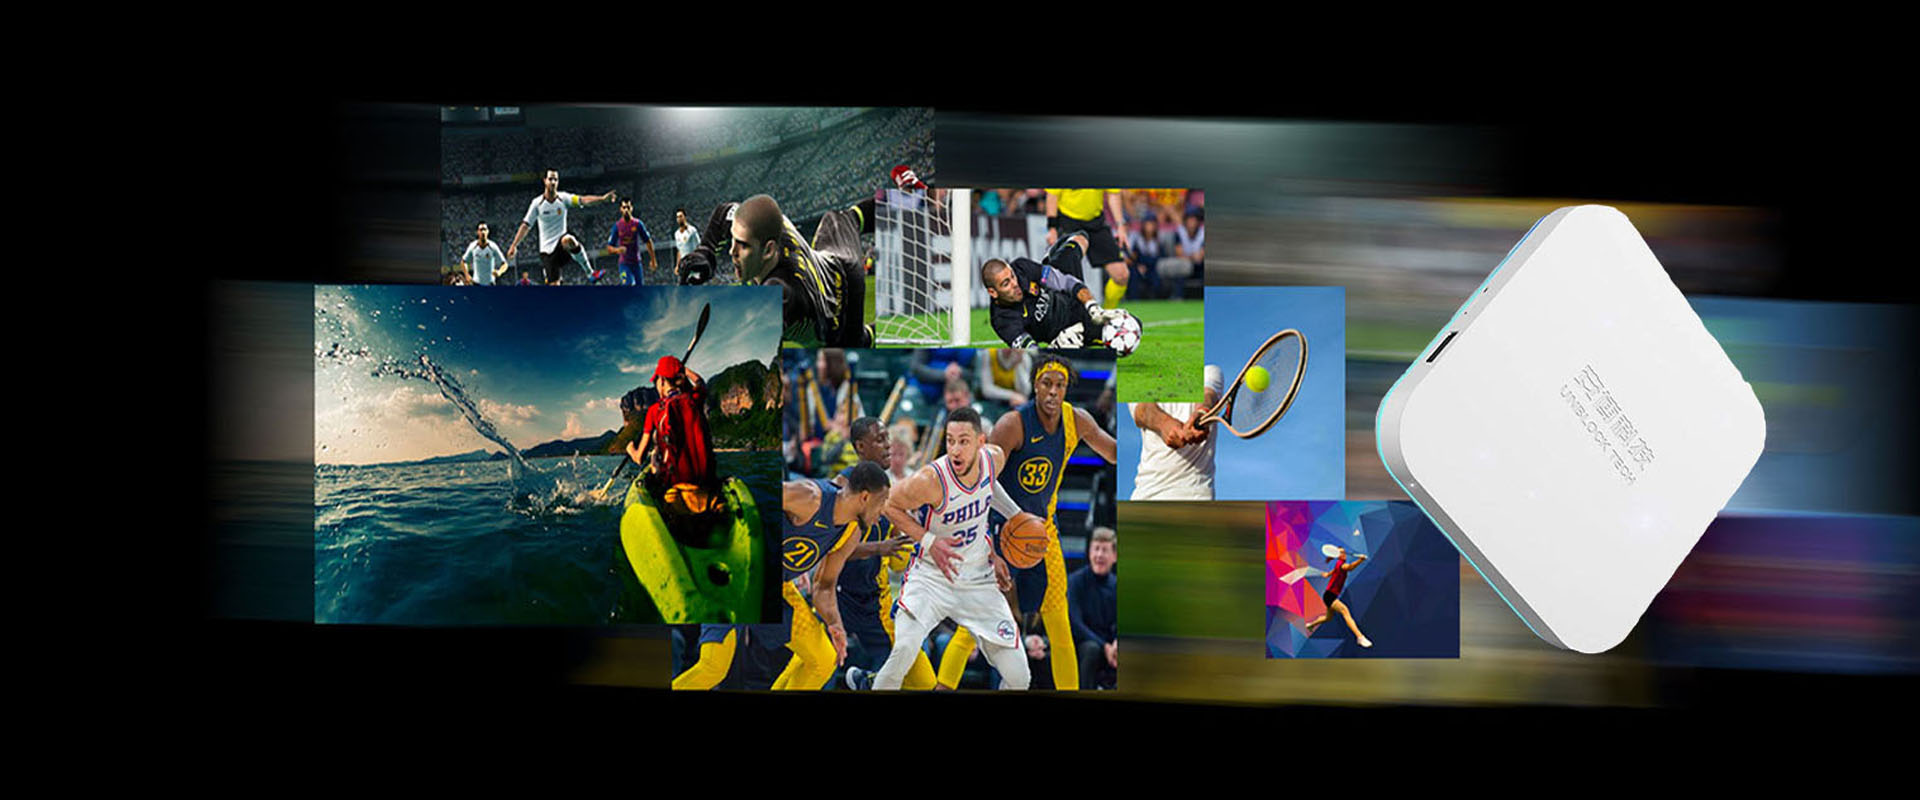 UNBLOCK TECH UBOX8 - Caja de TV deportiva diseñada para fanáticos de los deportes